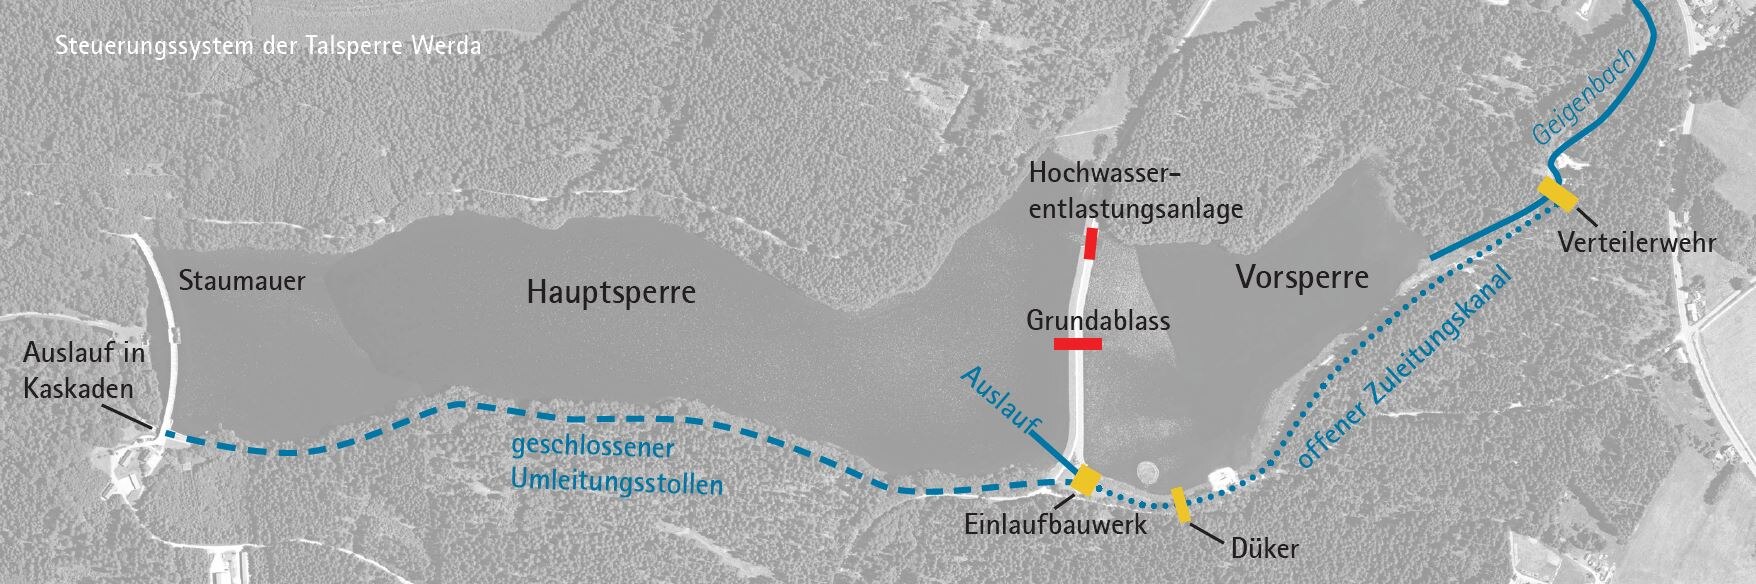 Grafik des Steuerungssystems der Talsperre Werda auf einem Luftbild 